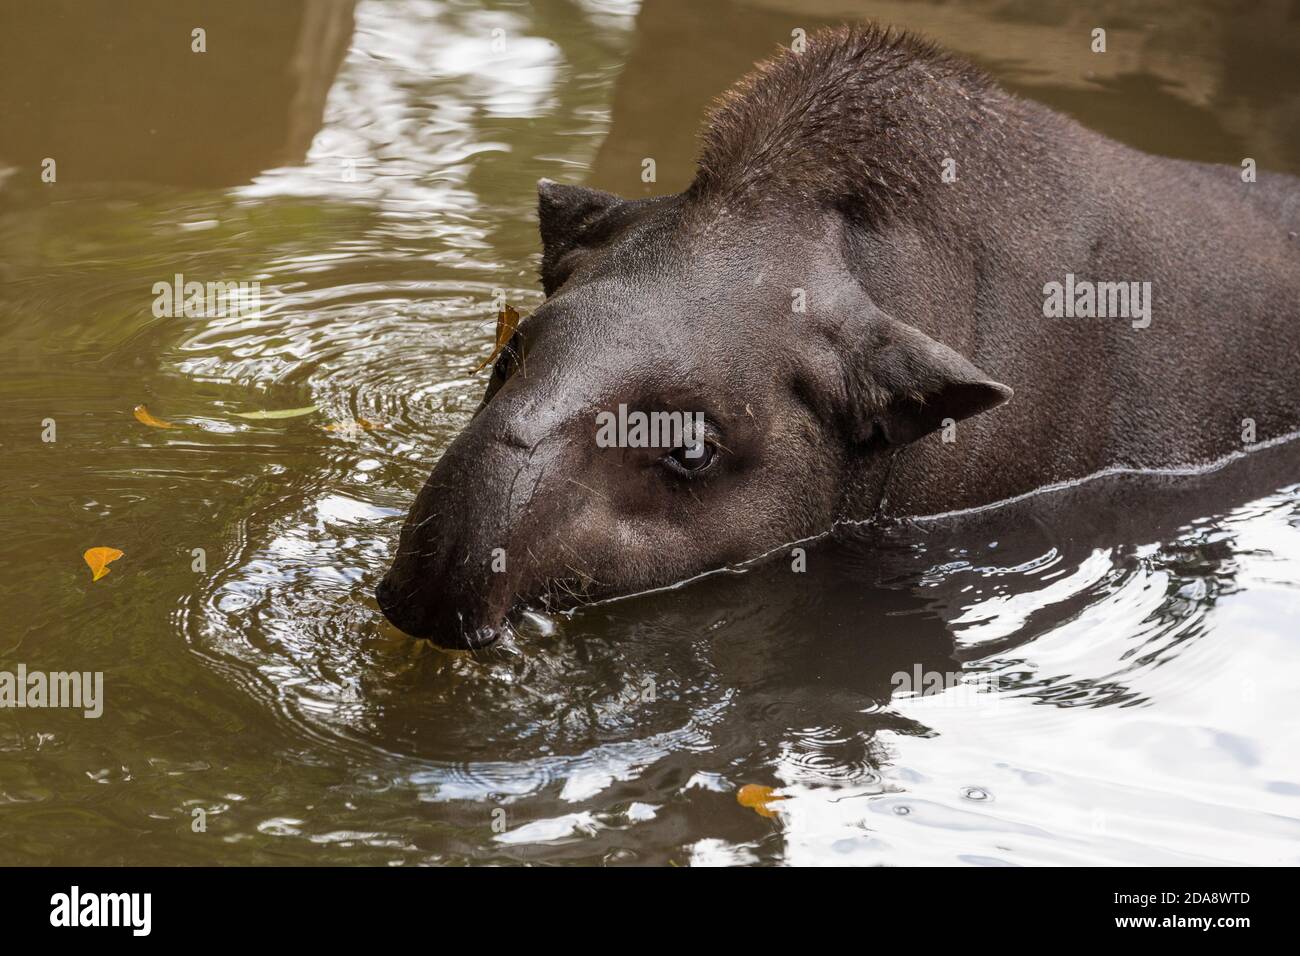 Le Tapir sud-américain, le Tapir brésilien ou le Tapir des basses terres, Tapirus terrestris, est le plus grand mammifère terrestre indigène de l'Amazonie. Les tapirs dépensent Banque D'Images